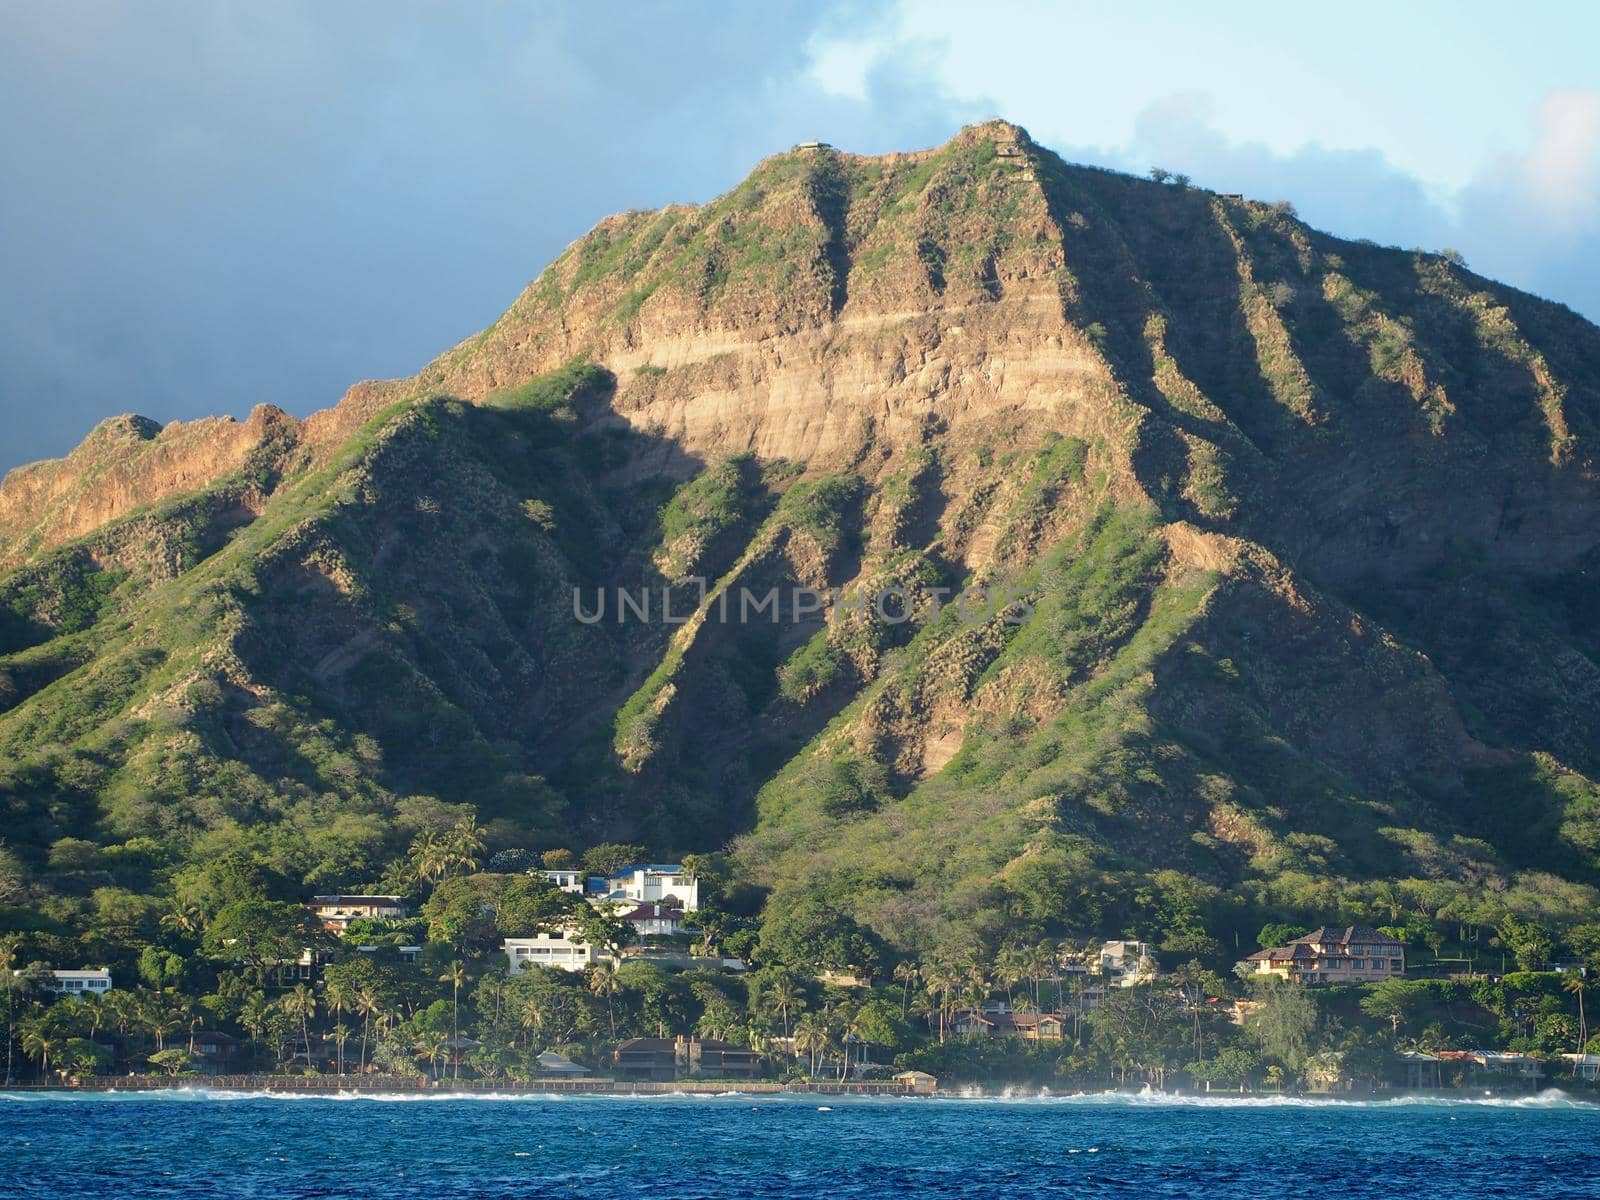 Leahi Beach Park, Diamond Head Crater, and coastline seen from the ocean on Oahu, Hawaii.